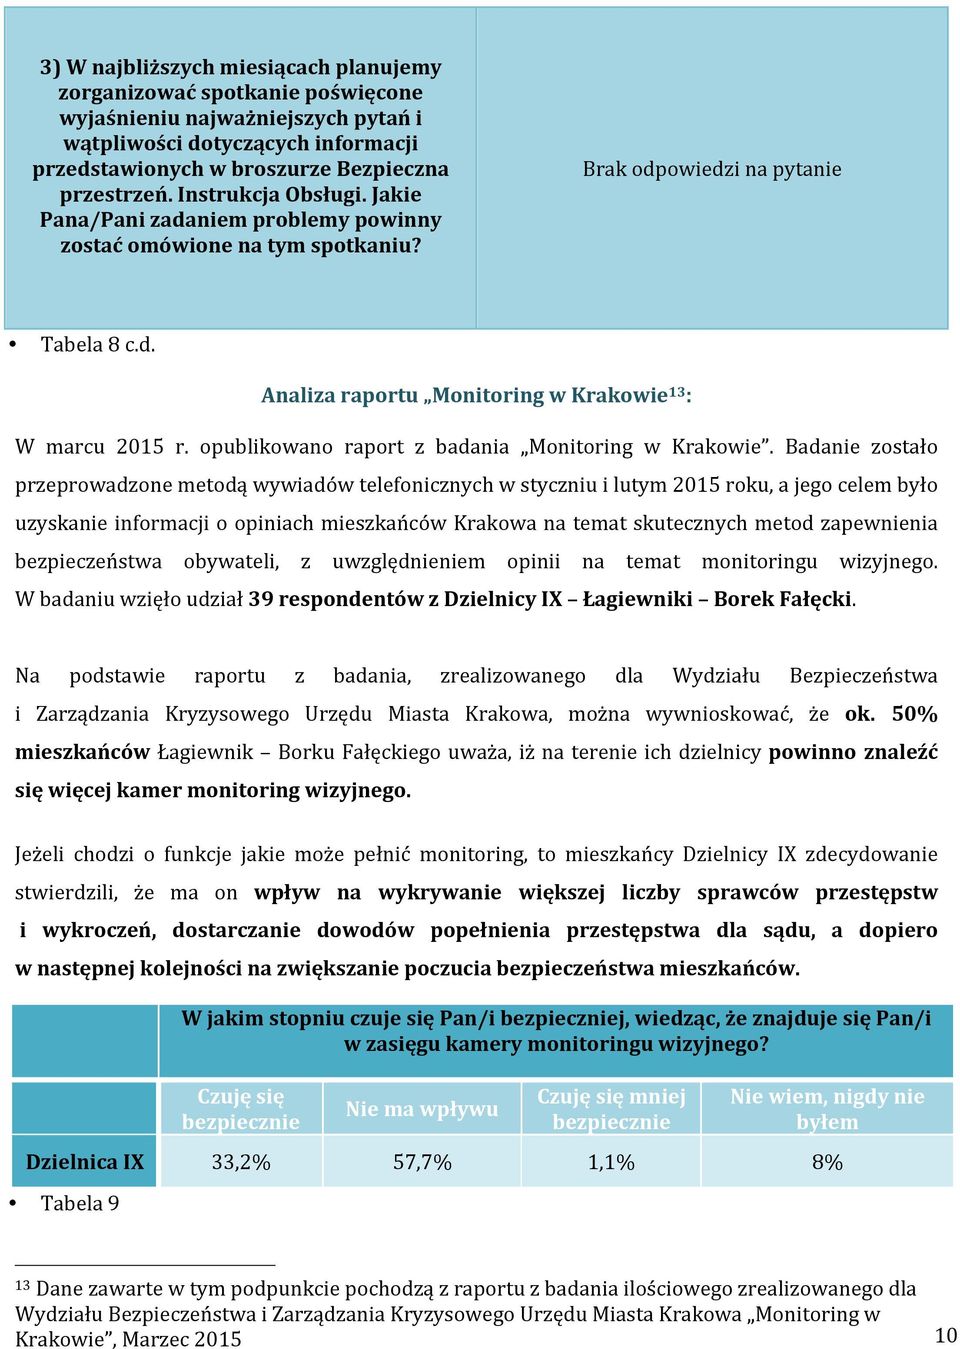 opublikowano raport z badania Monitoring w Krakowie.